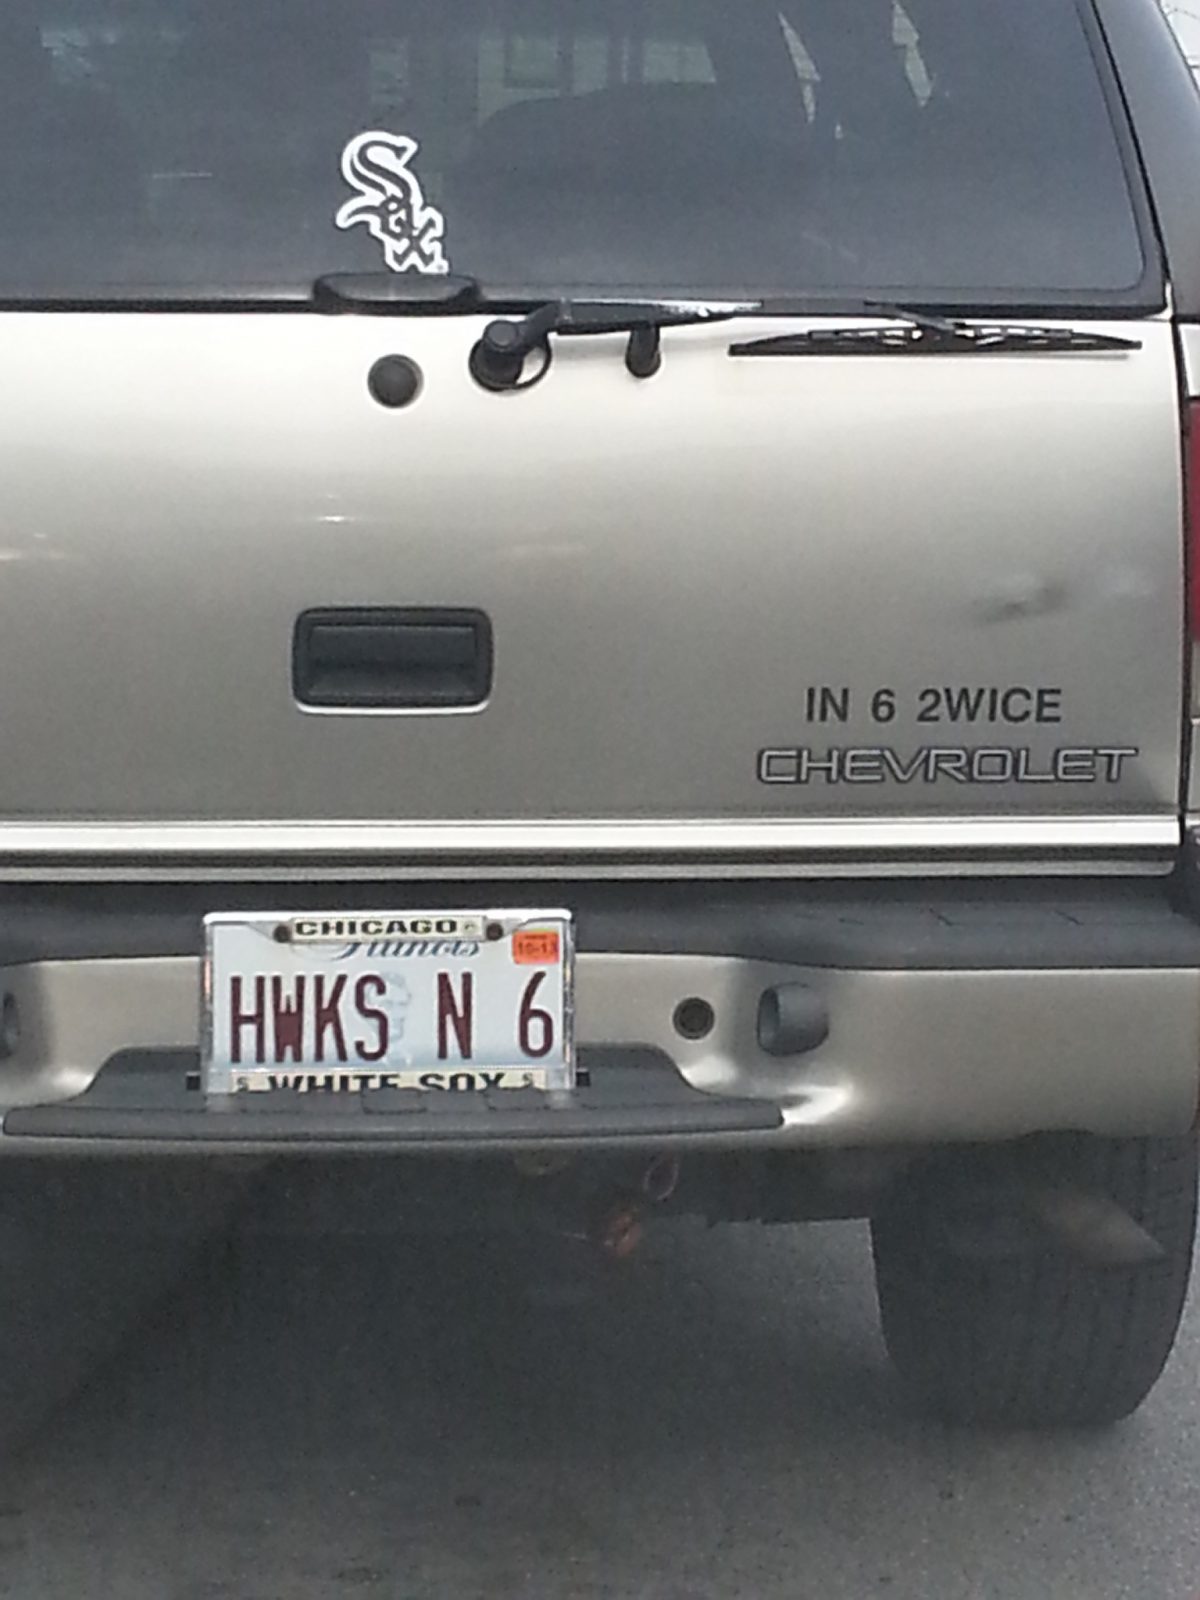 HWKS N 6 - Vanity License Plate by Busted Ride